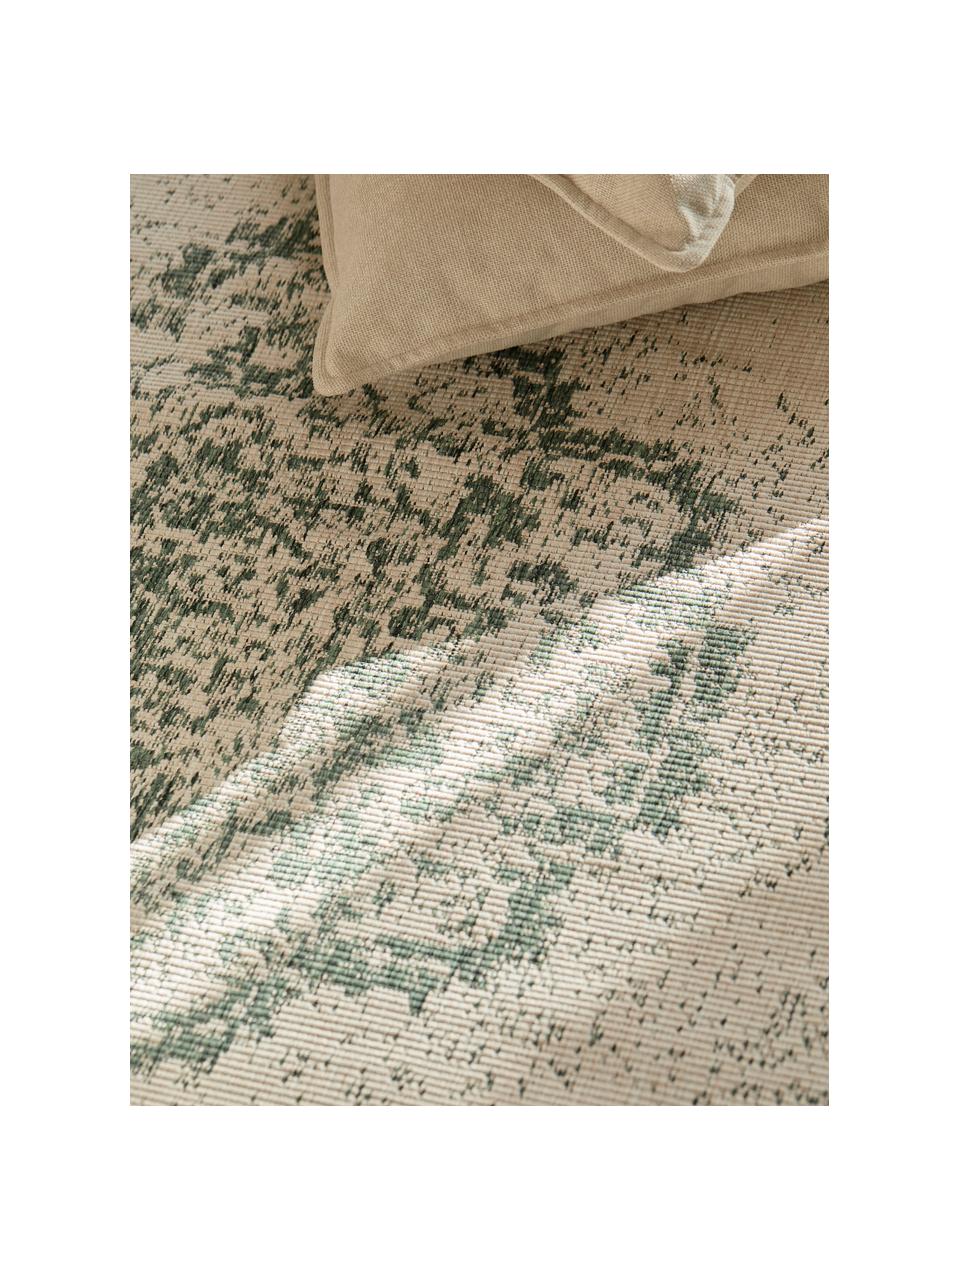 Tapis réversible intérieur-extérieur aspect vintage vert/crème Cebu, 100 % polypropylène, Vert sauge, blanc cassé, larg. 160 x long. 230 cm (taille M)